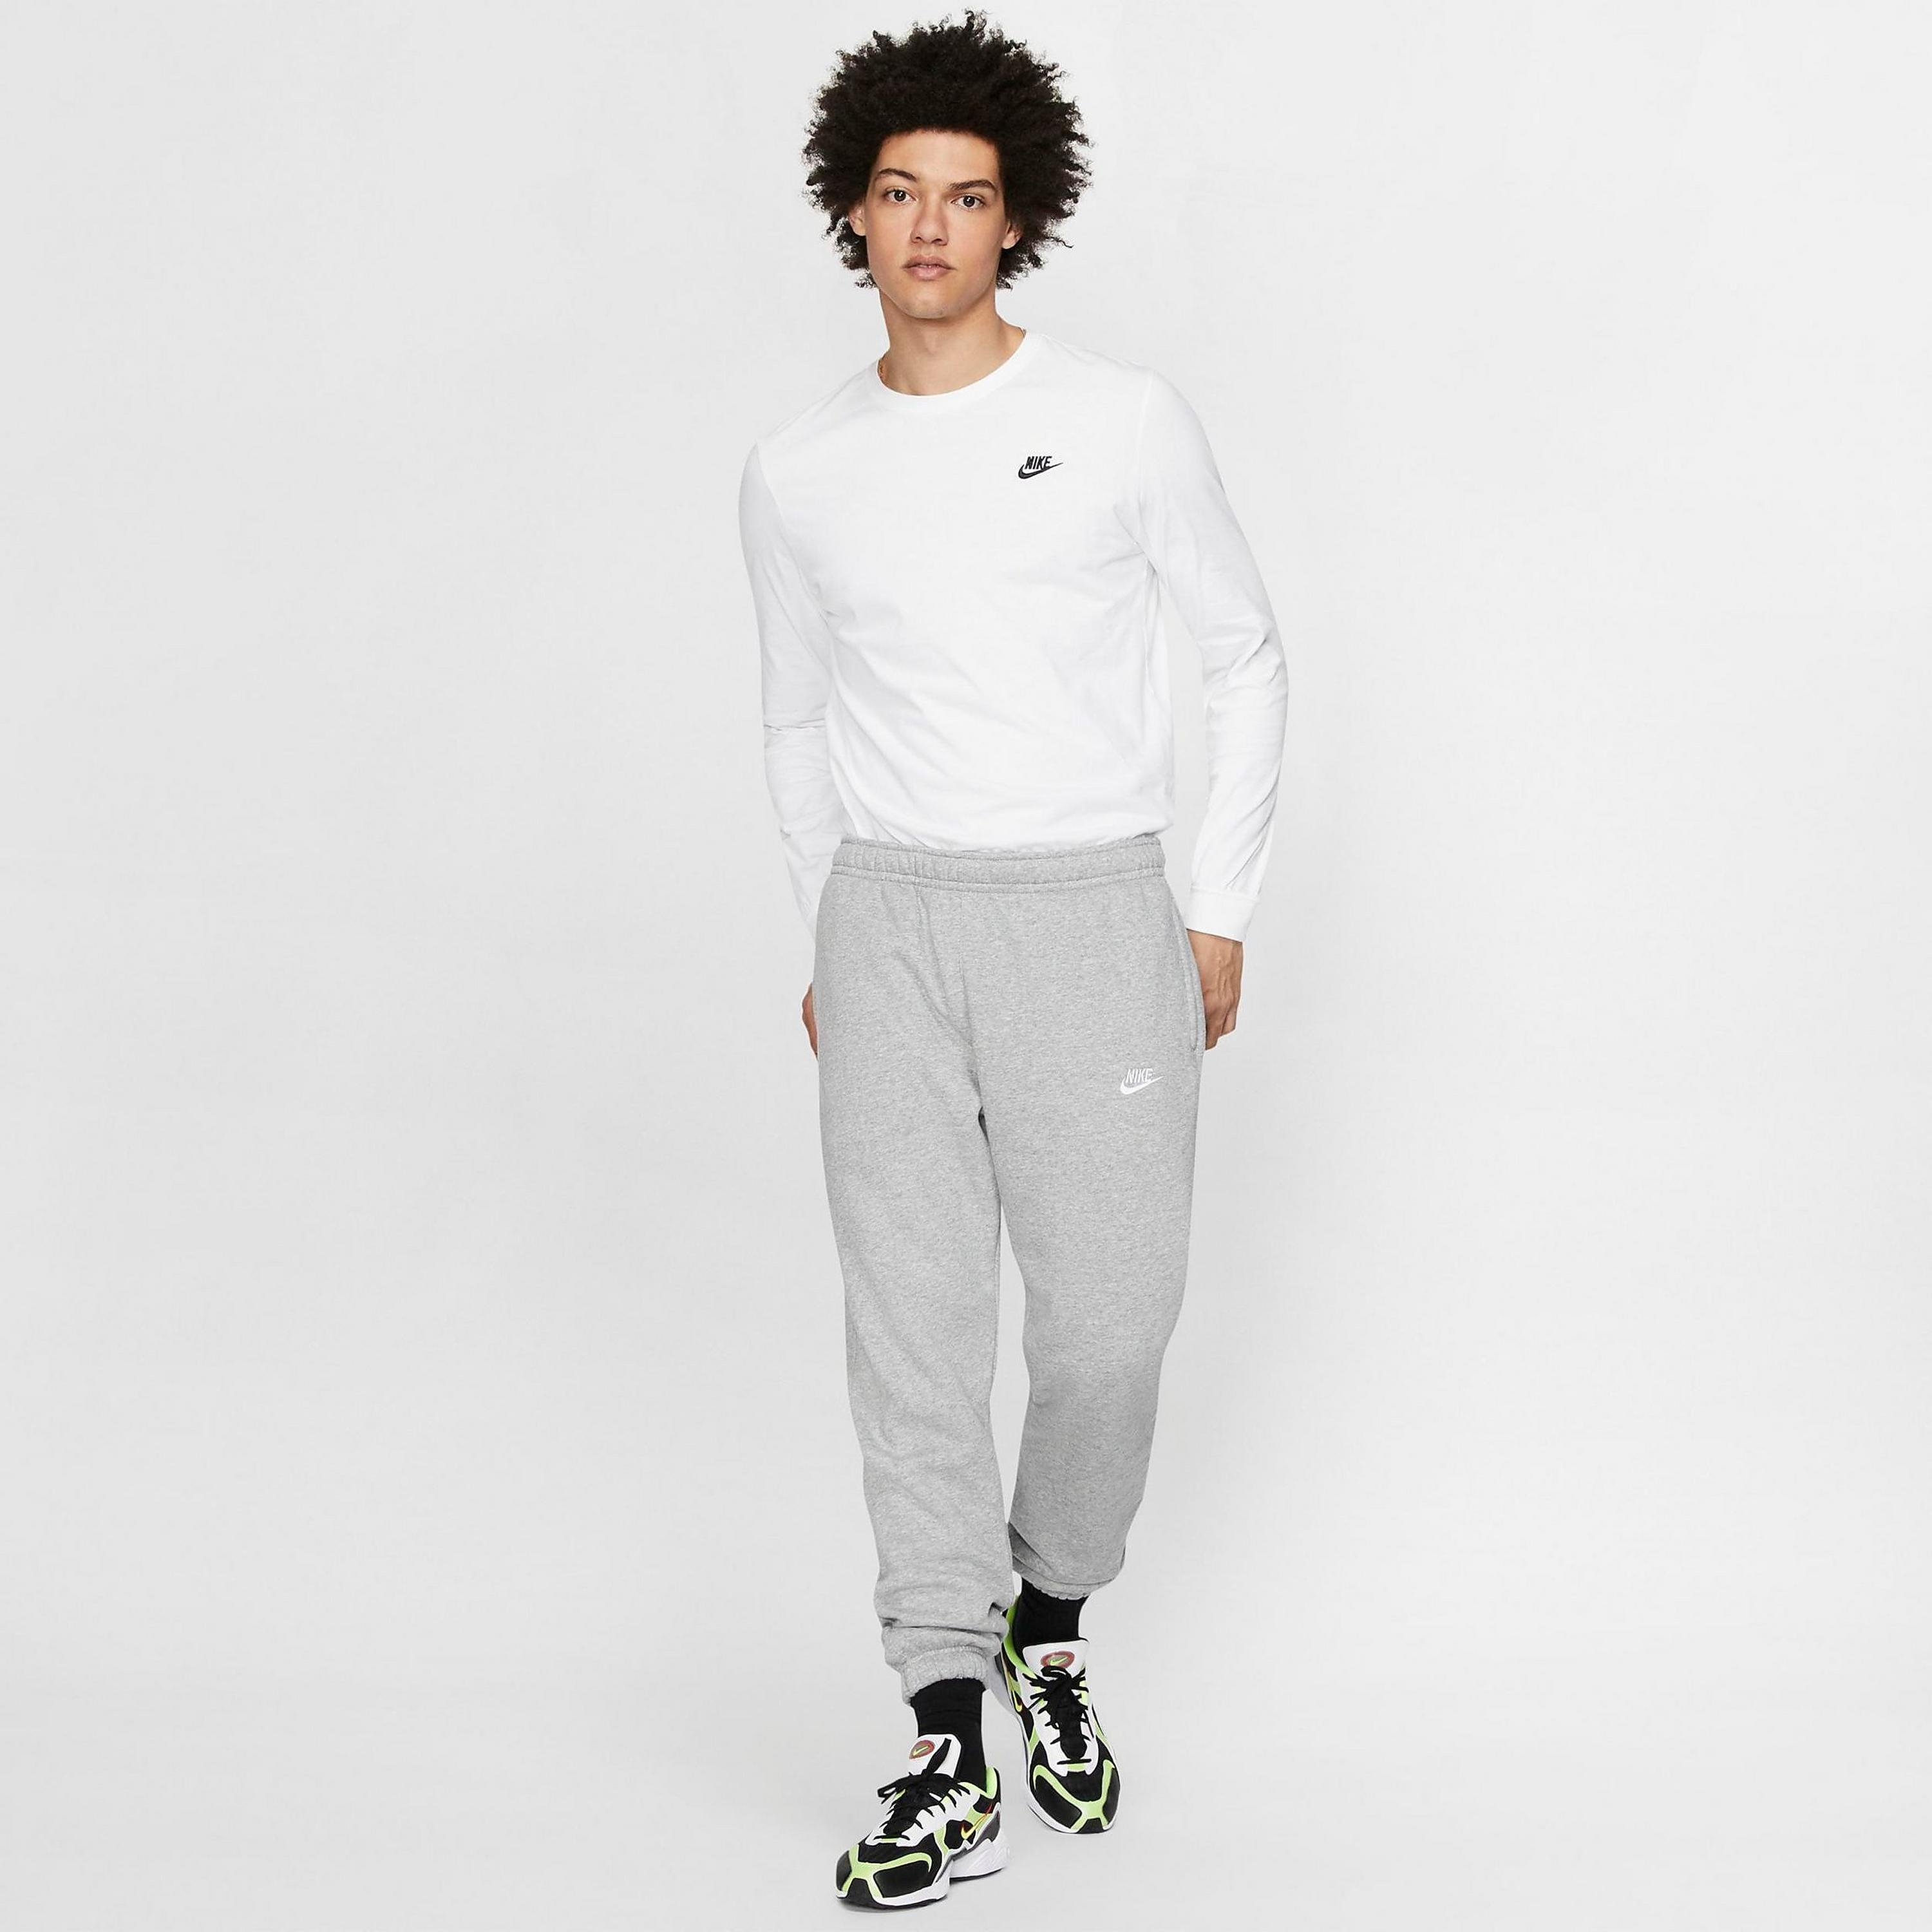 Мужские брюки-джоггеры из джерси Nike Sportswear Club, серый – купить из-заграницы через сервис «CDEK.Shopping»